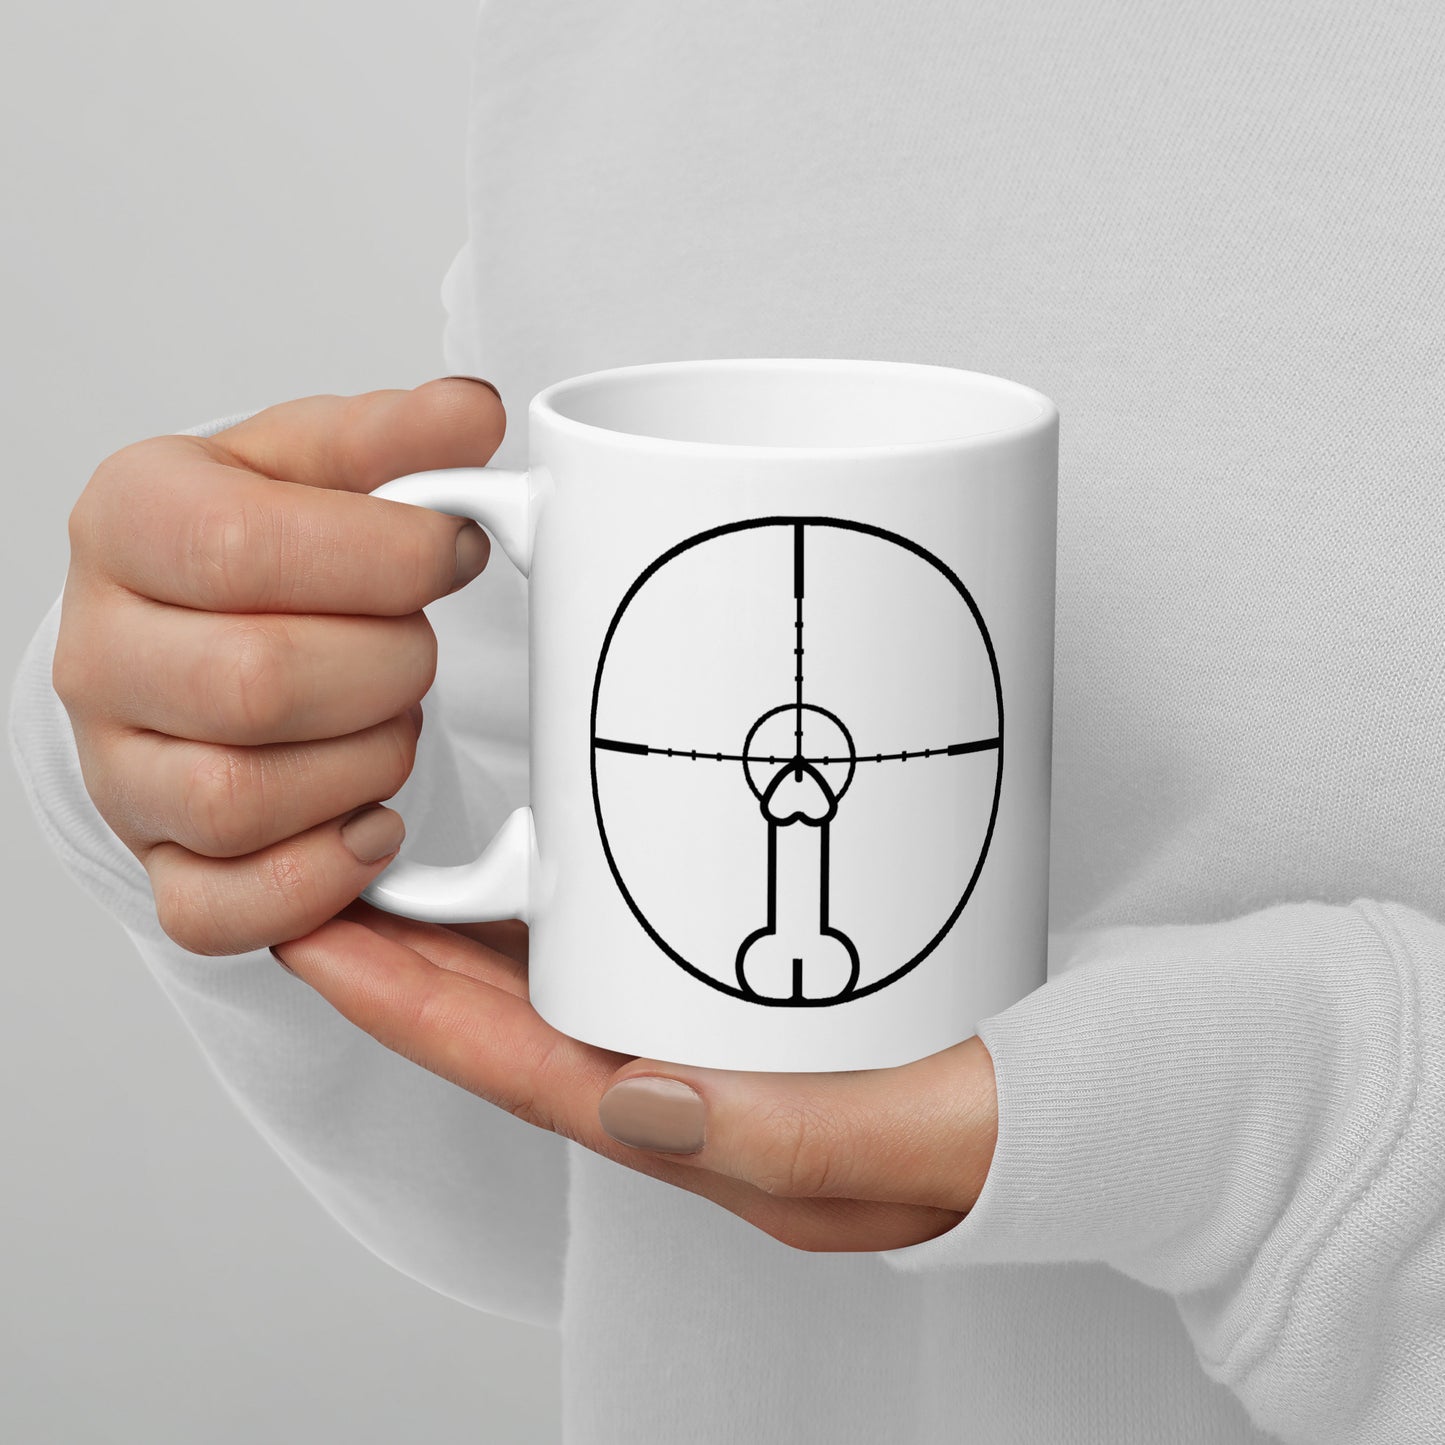 DONG Reticle mug